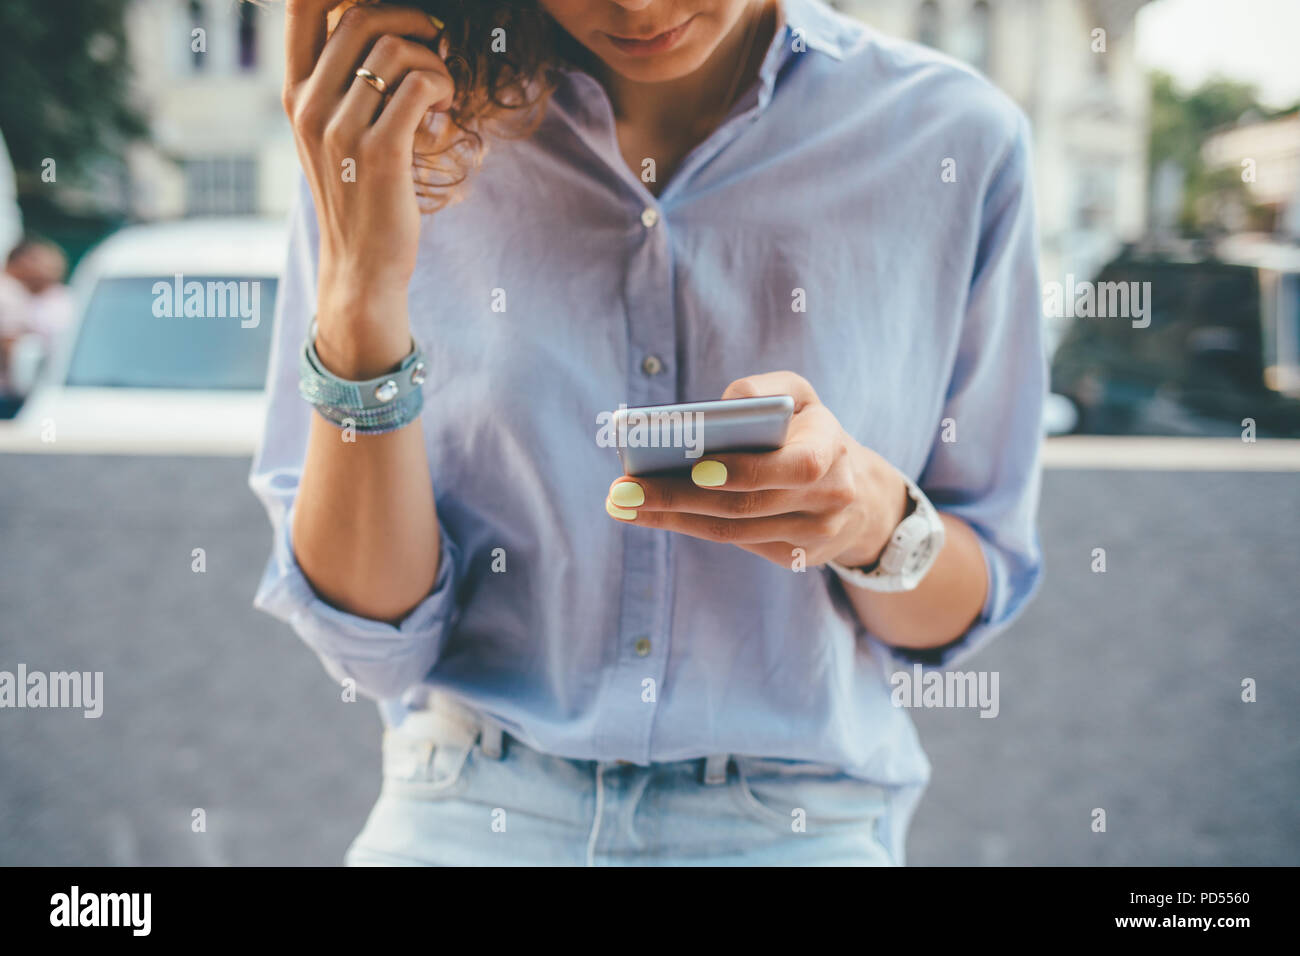 Jeune femme portant un t-shirt bleu et un jean à l'aide d'appareil mobile en ville. Close-up de la main de femme avec manucure jaune holding smart phone sur l'extérieur Banque D'Images